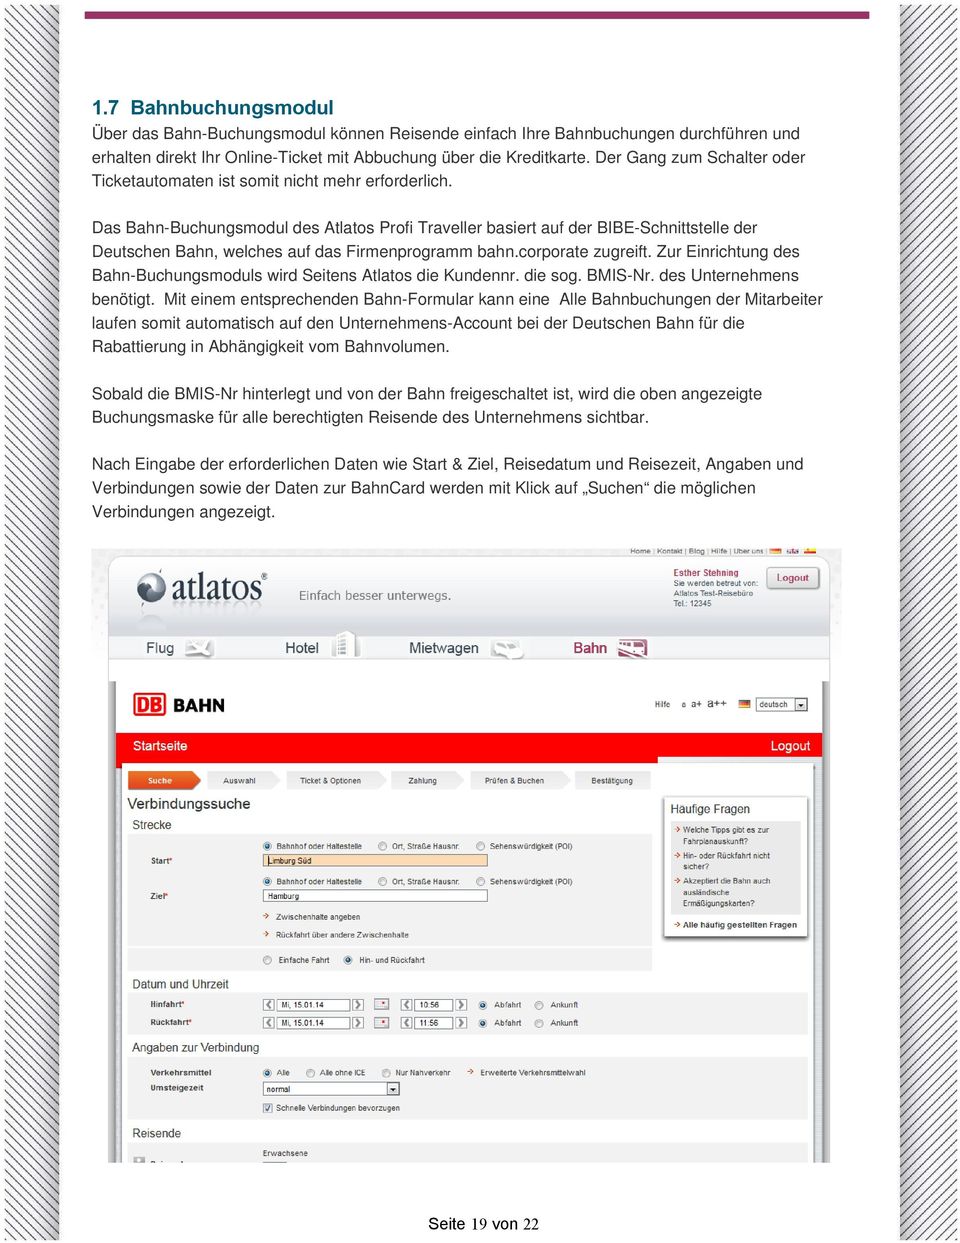 Das Bahn-Buchungsmodul des Atlatos Profi Traveller basiert auf der BIBE-Schnittstelle der Deutschen Bahn, welches auf das Firmenprogramm bahn.corporate zugreift.